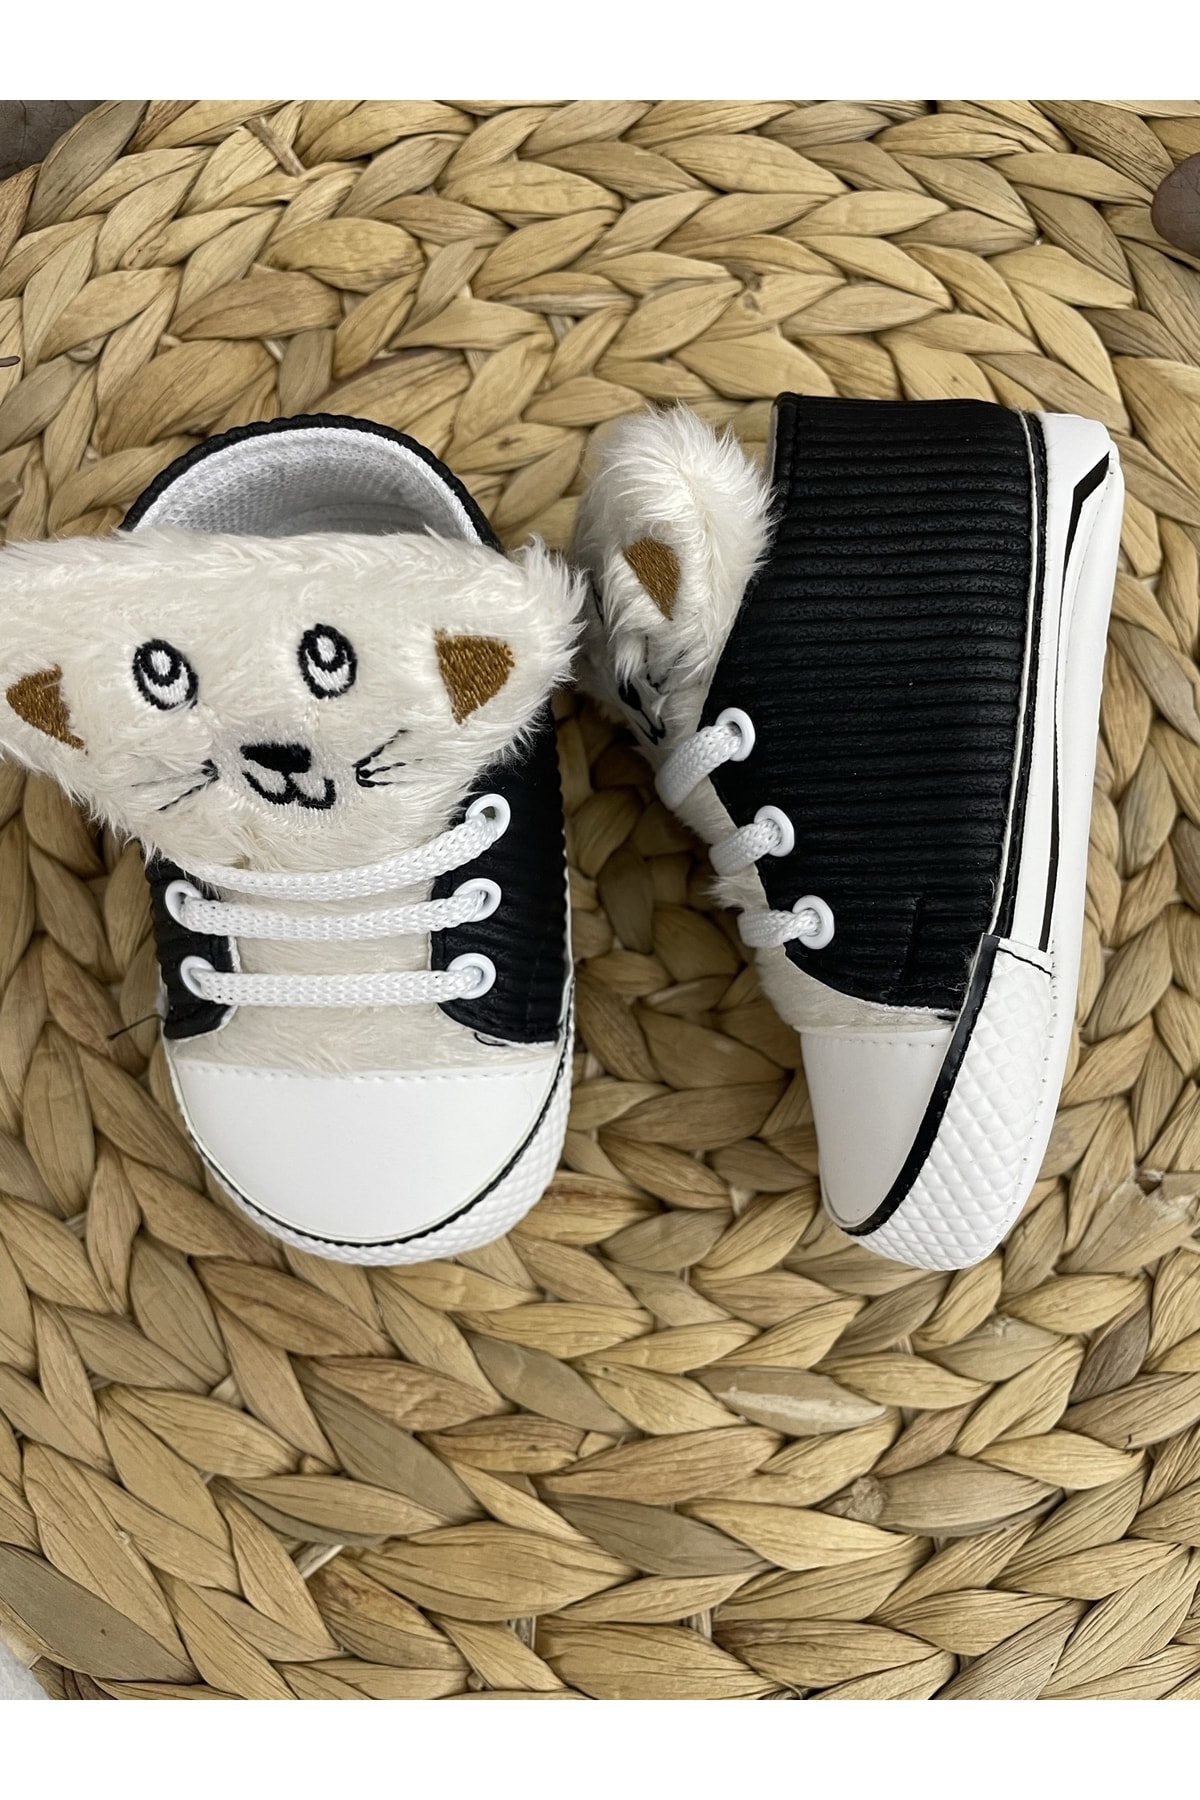 TREND Tüylü Kedi Erkek Bebek Ayakkabı